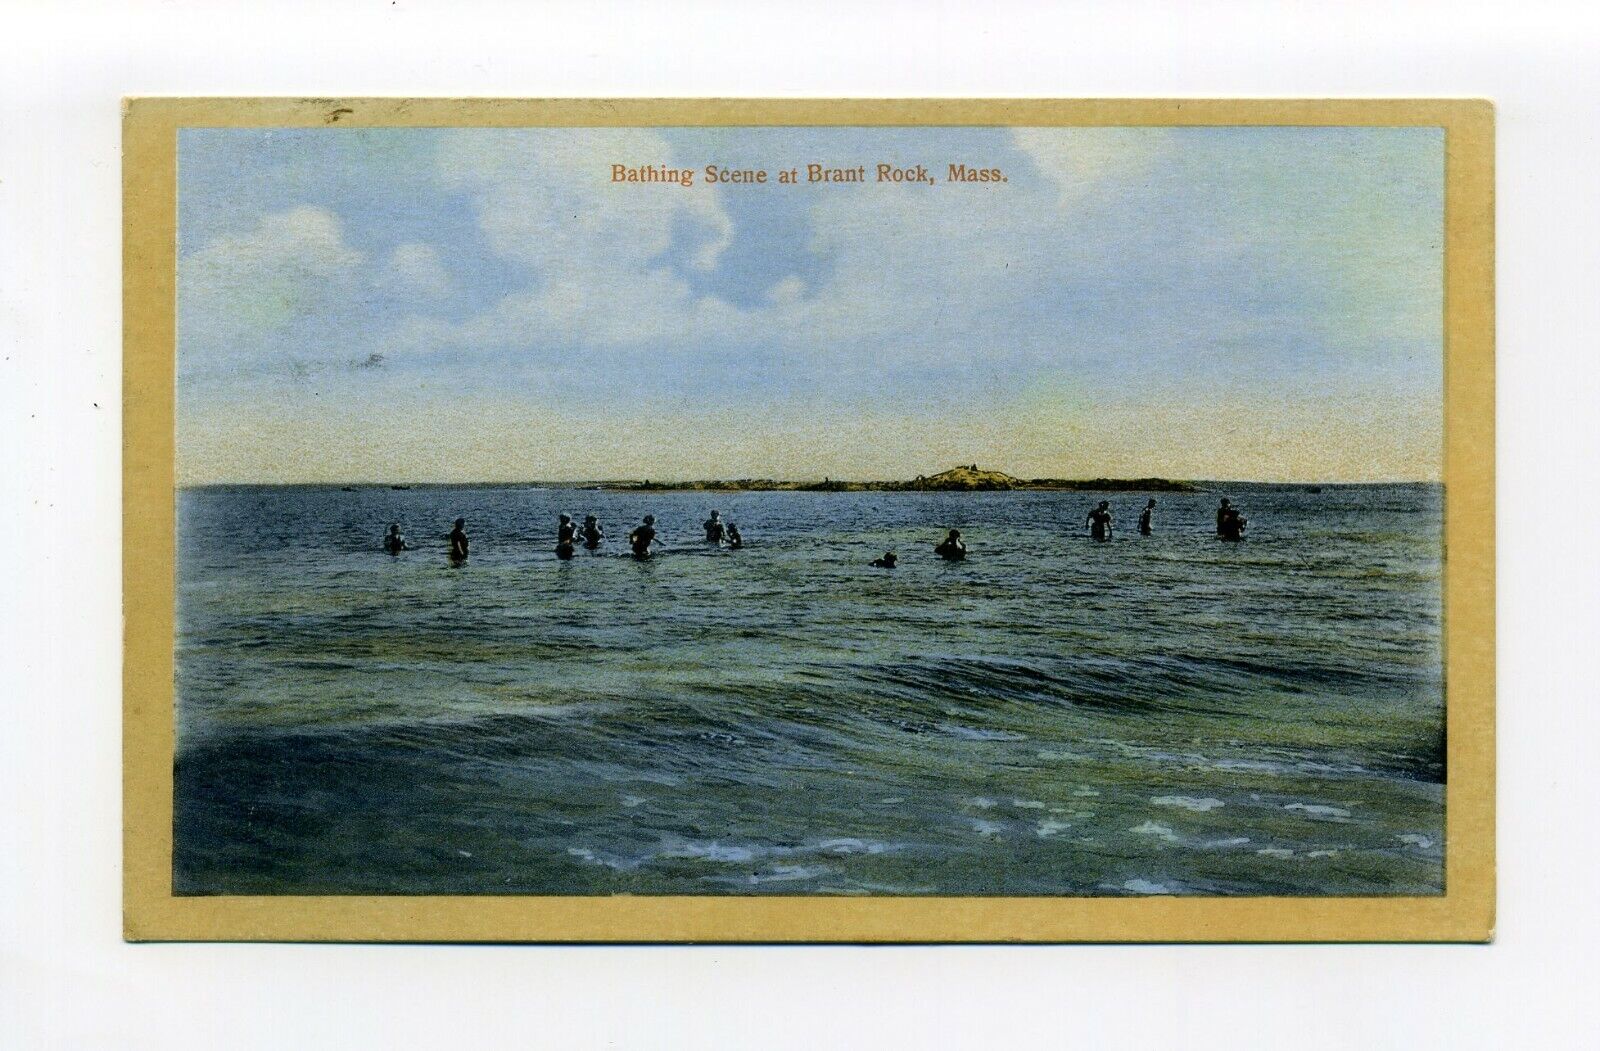 Brant Rock, Marshfield MA Mass 1911 postcard, people in water, Bathing Scene